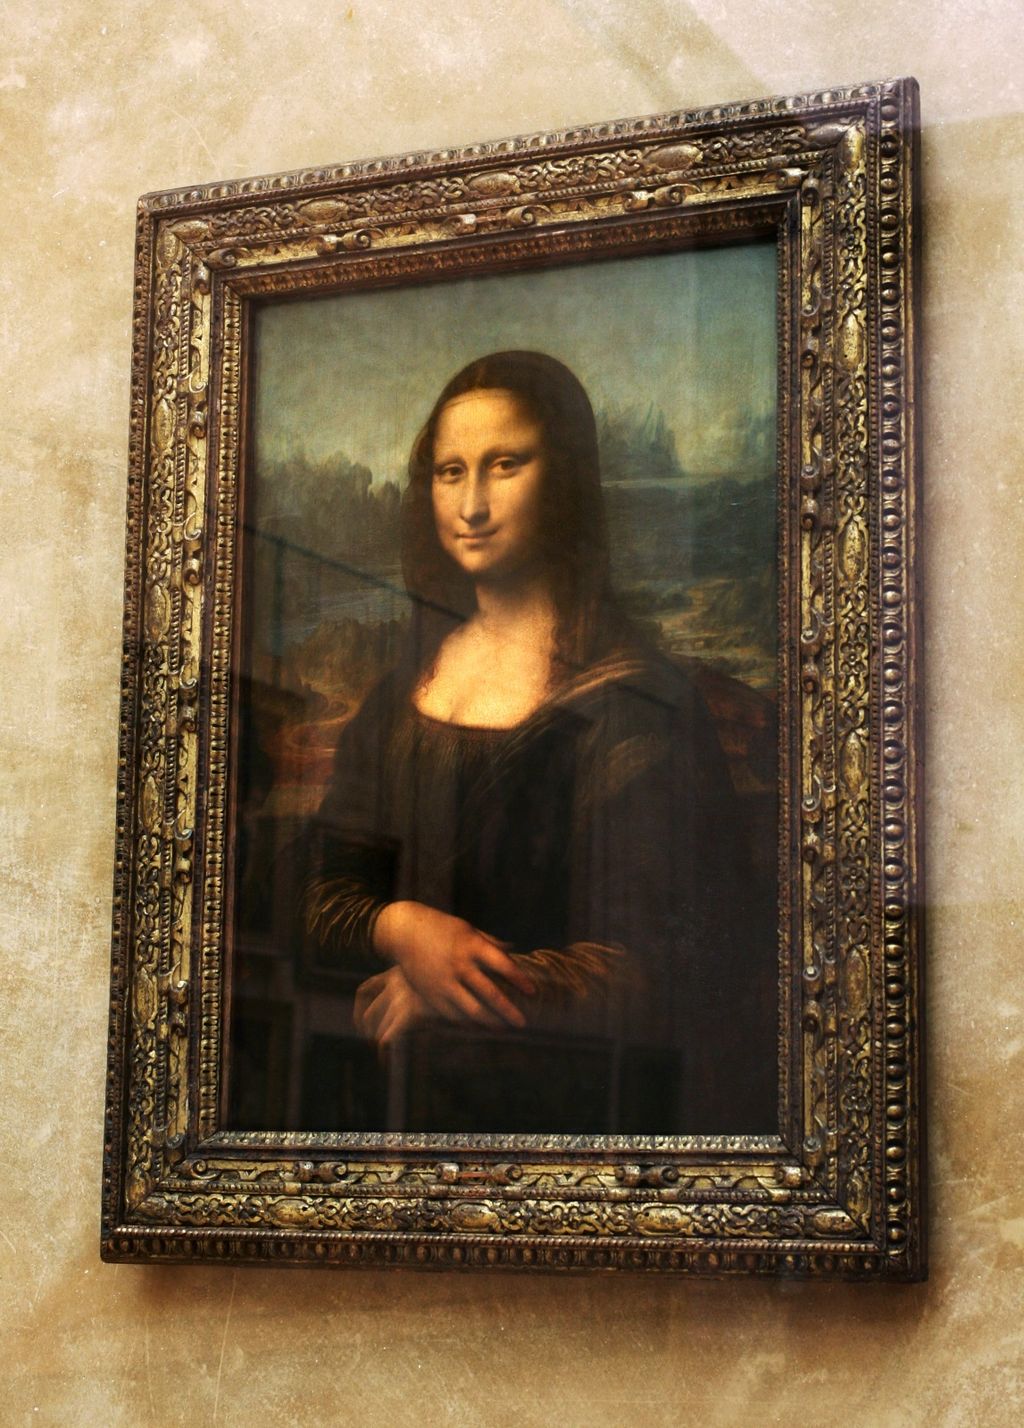 Vjeruje se da je Mona Lisa nastala u 16. stoljeću